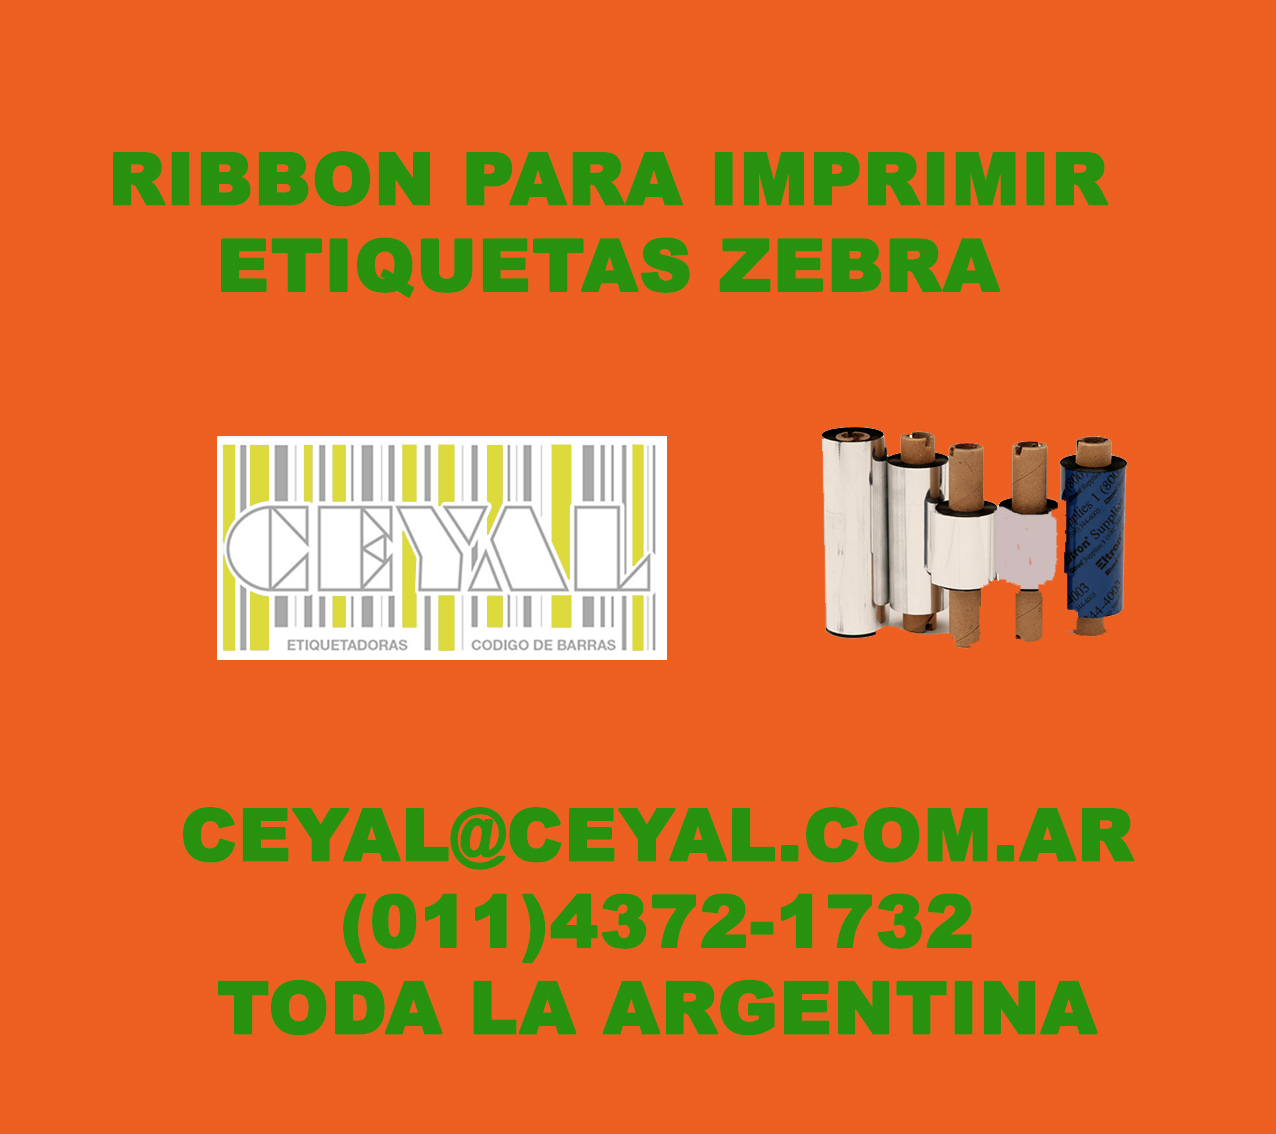 Fabrica de etiquetas adhesivas Artículos para construcción Argentina